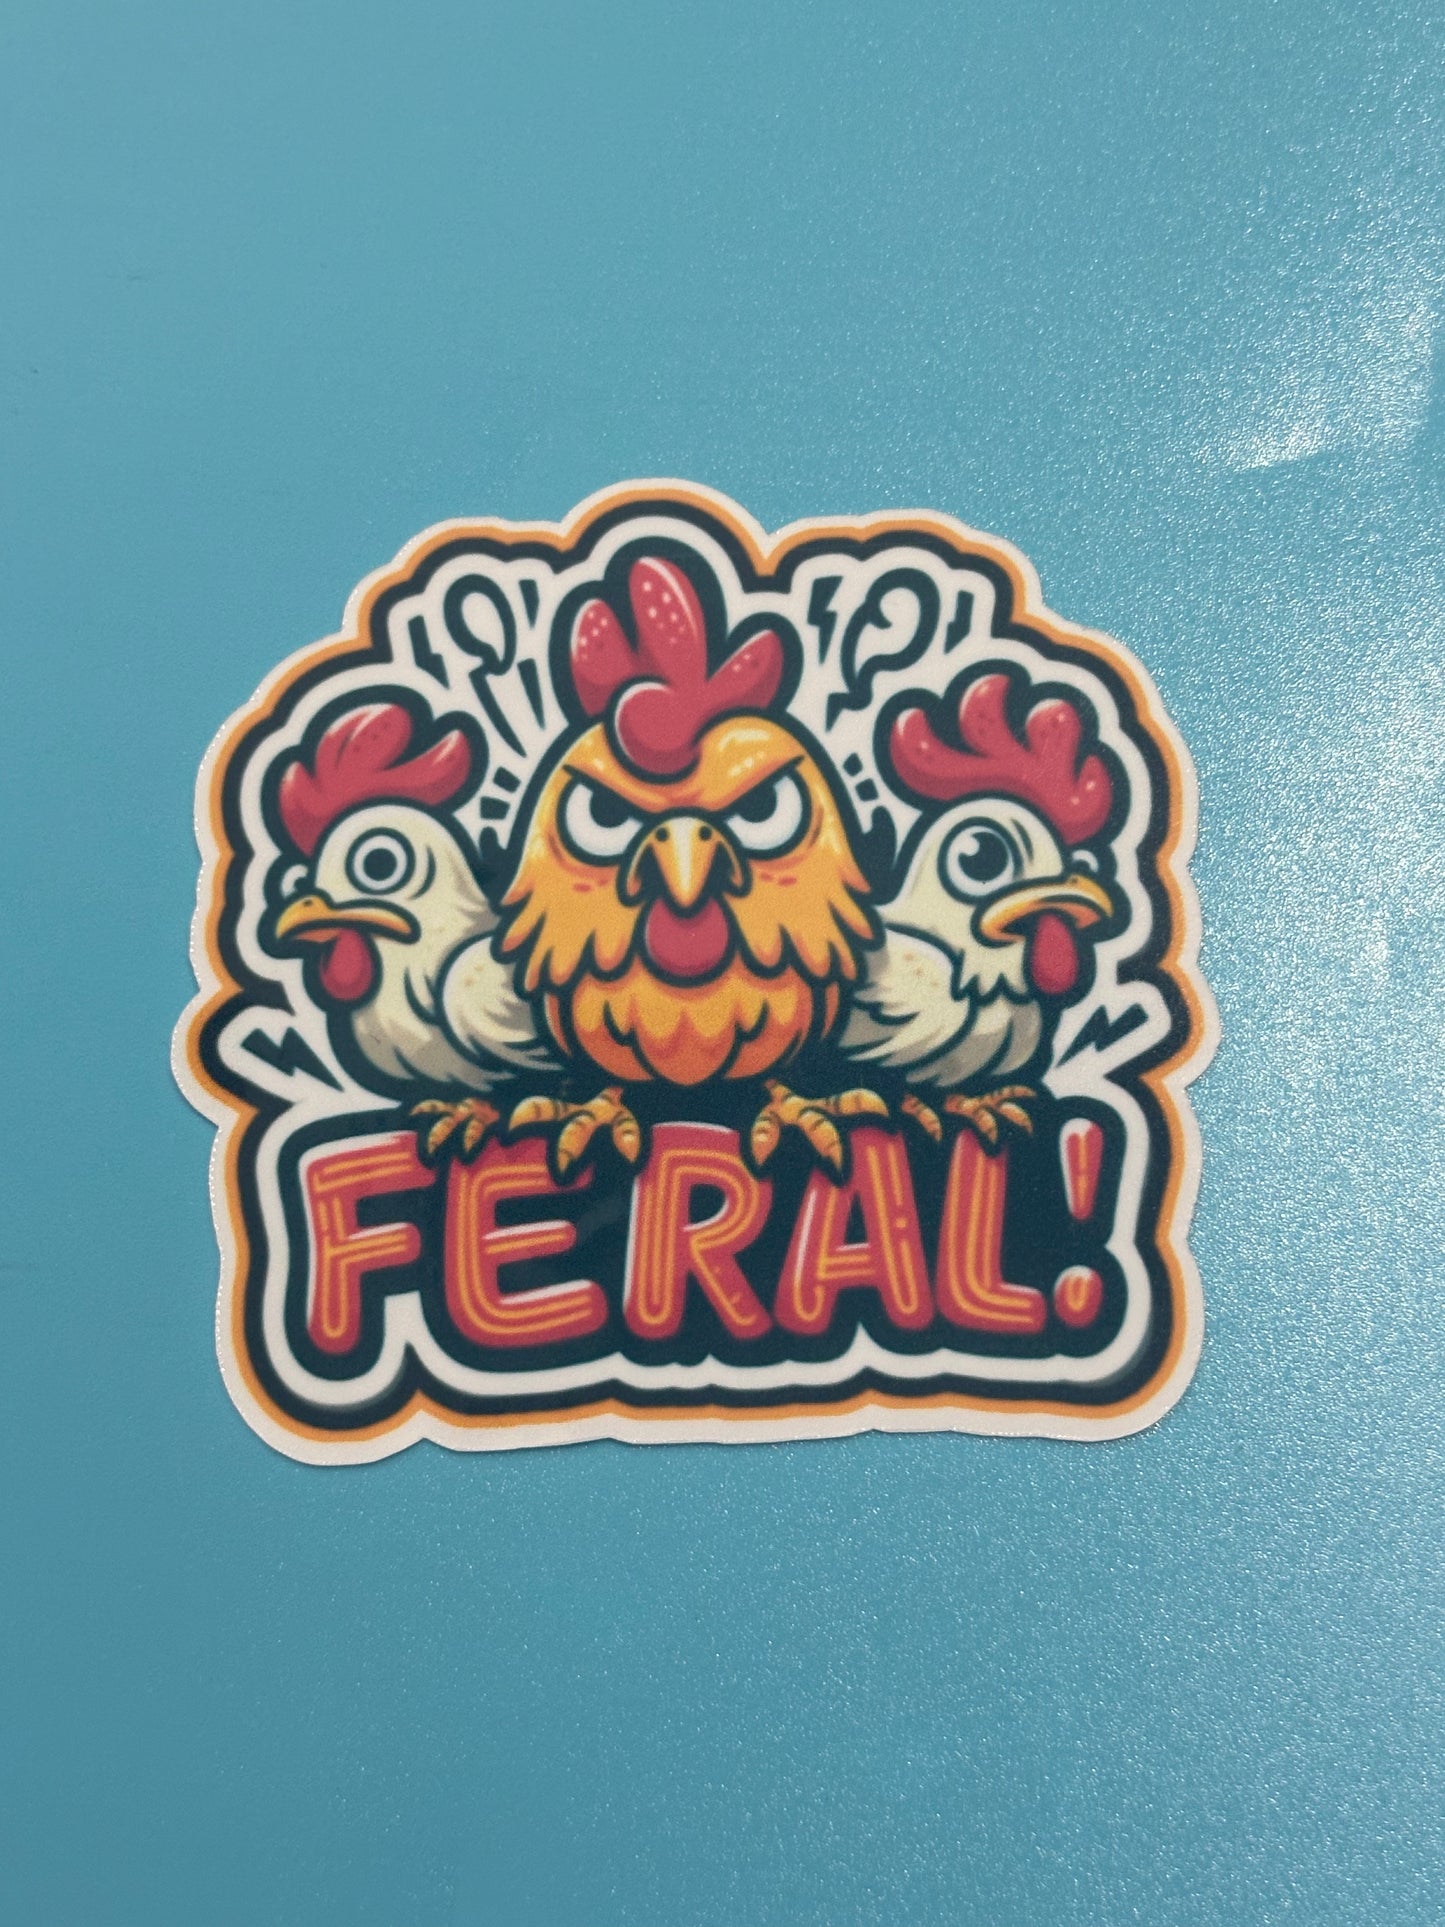 Feral Chicken 3x3 inch Vinyl Sticker